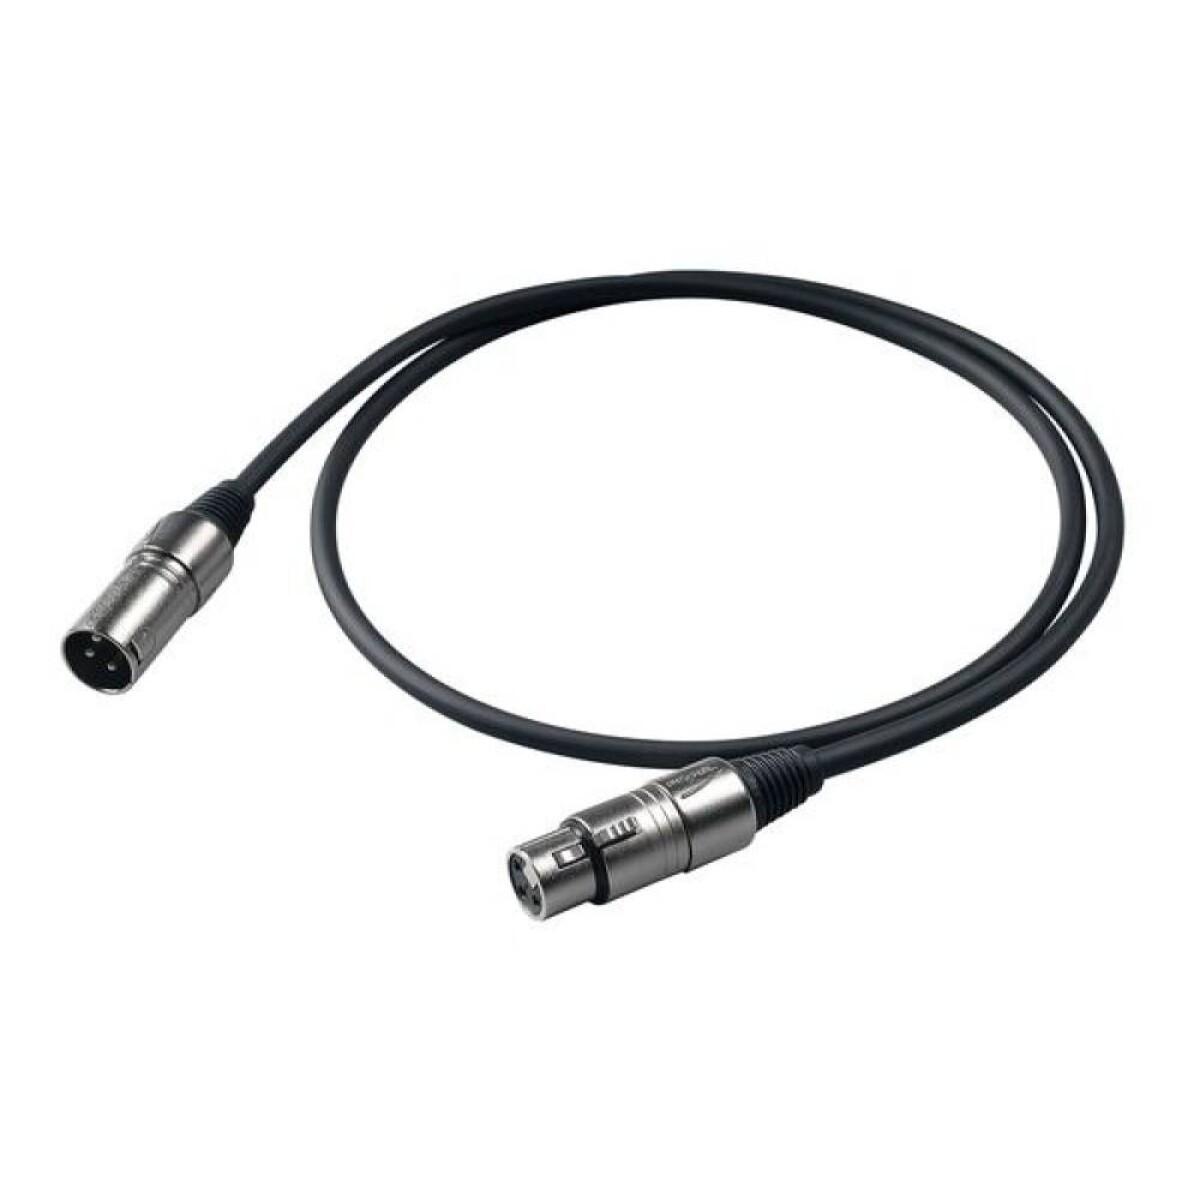 Cable Micrófono Proel Bulk250lu1 1 Mt Xlr-xlr 